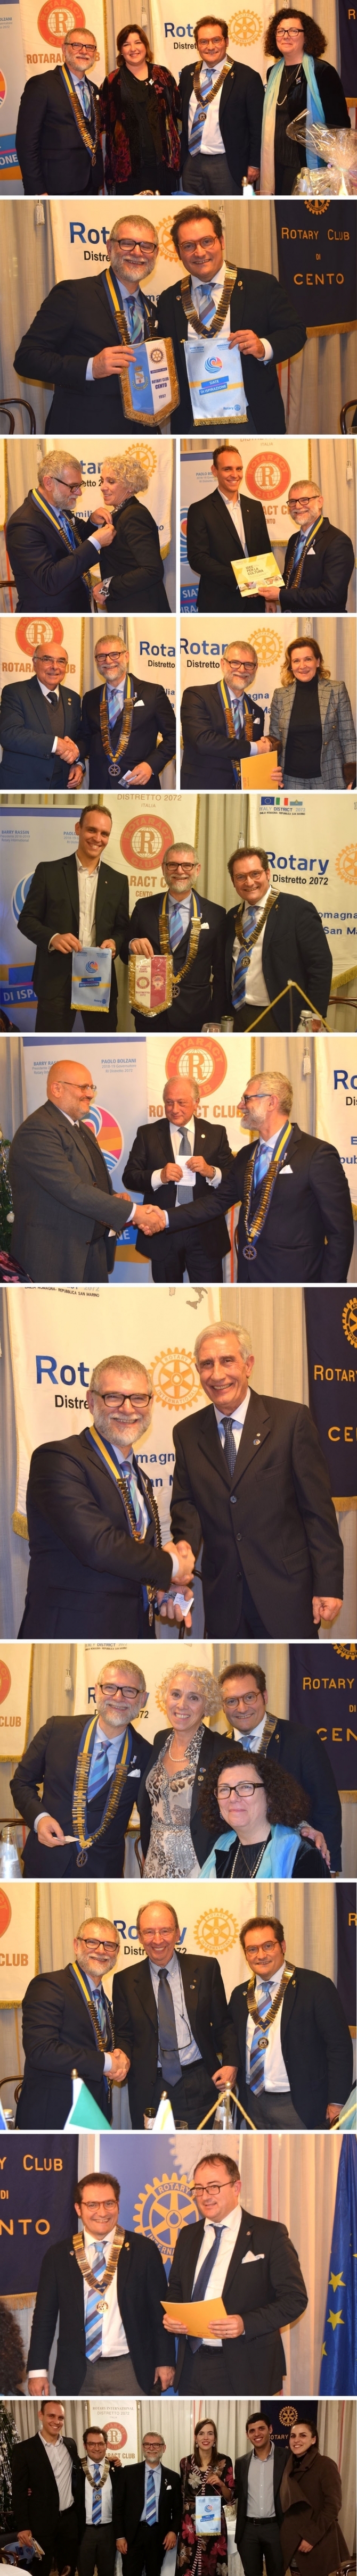 26 Novembre 2018: visita del Governatore Paolo BOLZANI - ROTARY CLUB di CENTO